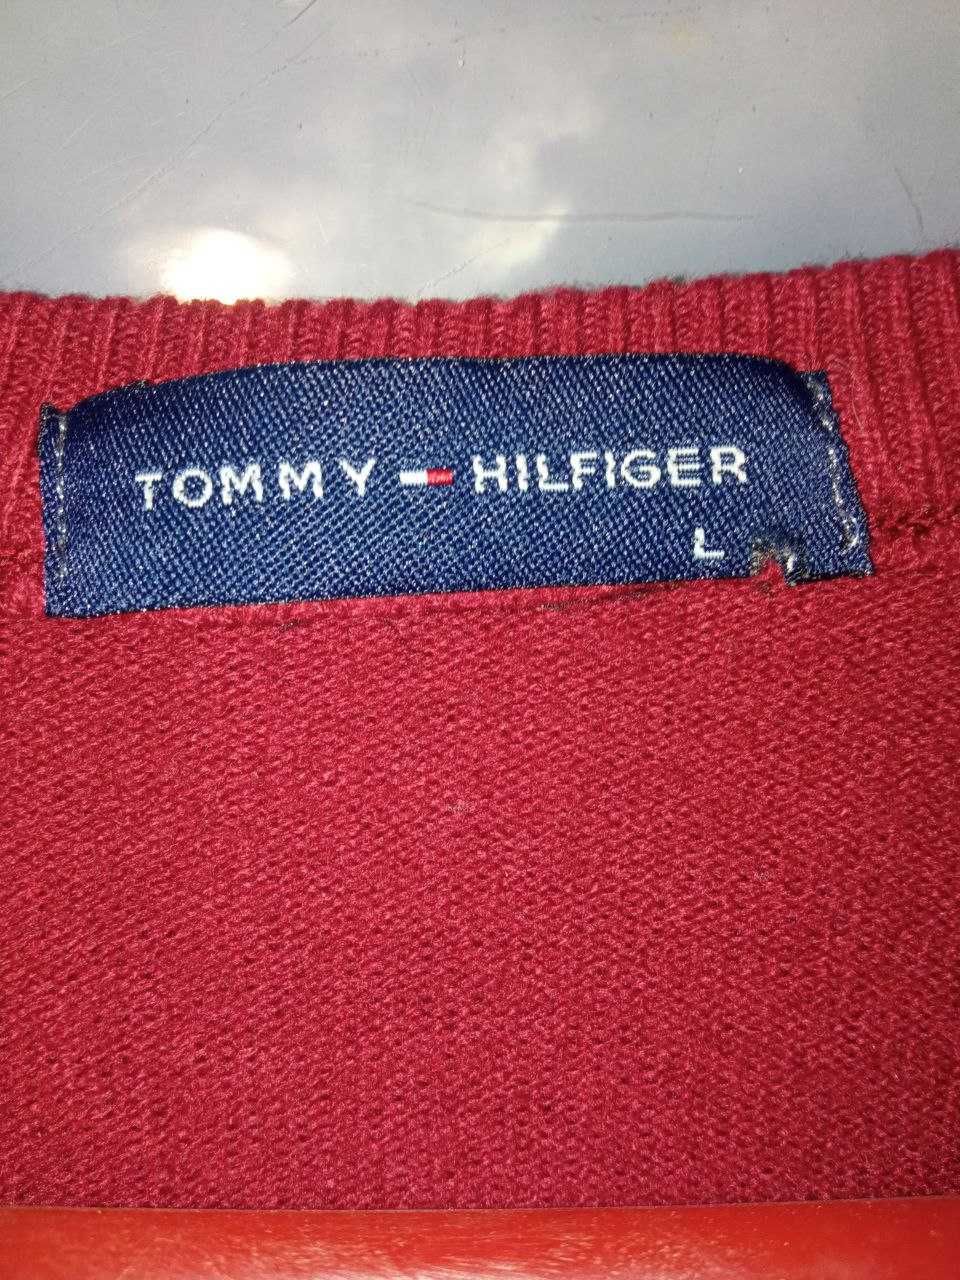 Свитер червоний Tommy Hilfiger розмір L  одягався один раз